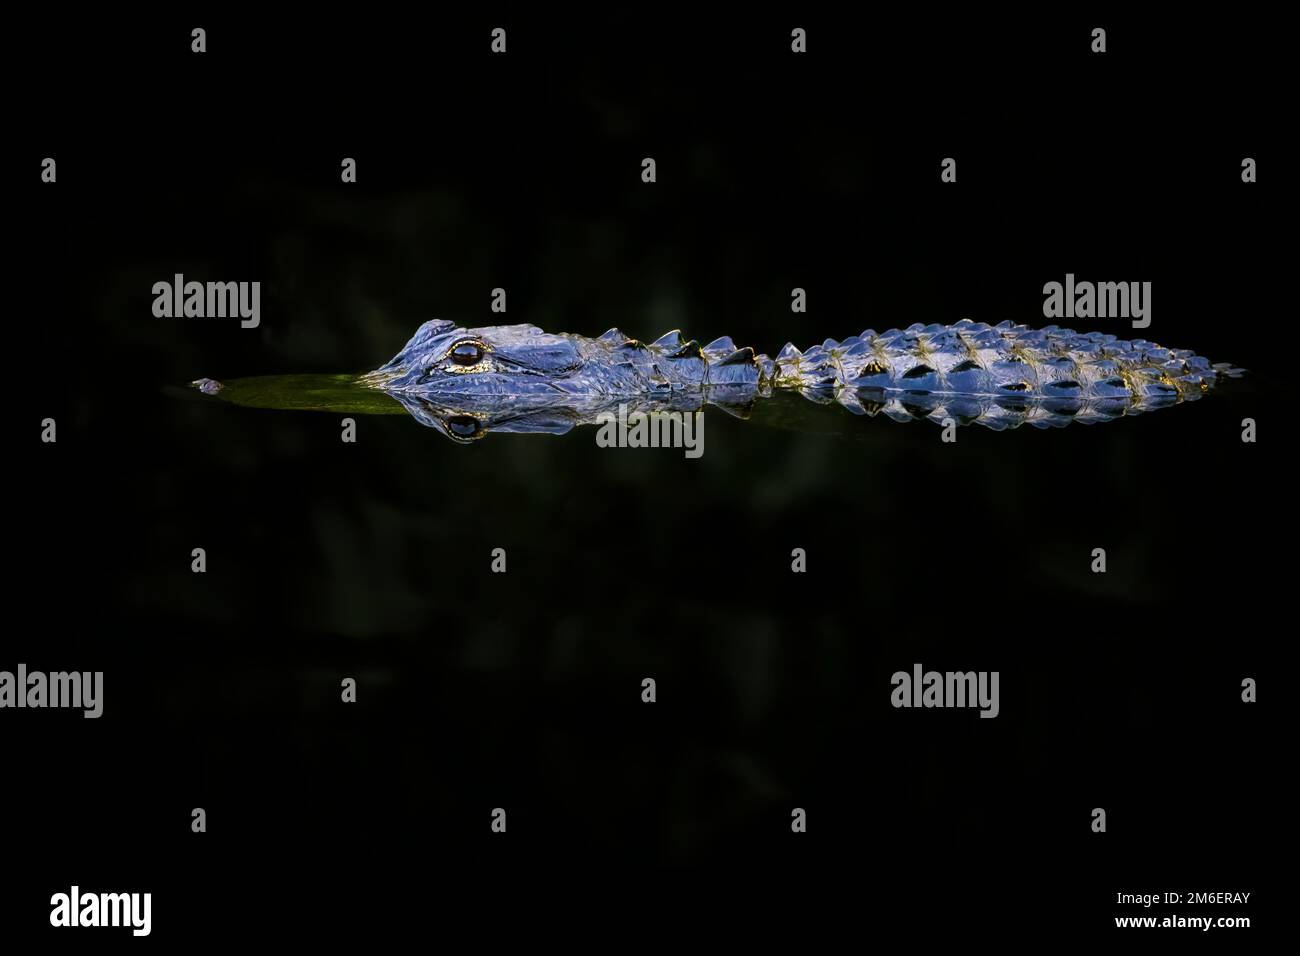 Amerikanischer Alligator (Alligator mississippiensis) Jugendliche, versteckt im dunklen Wasser, Big Cypress National Reserve, Florida, Vereinigte Staaten. Stockfoto